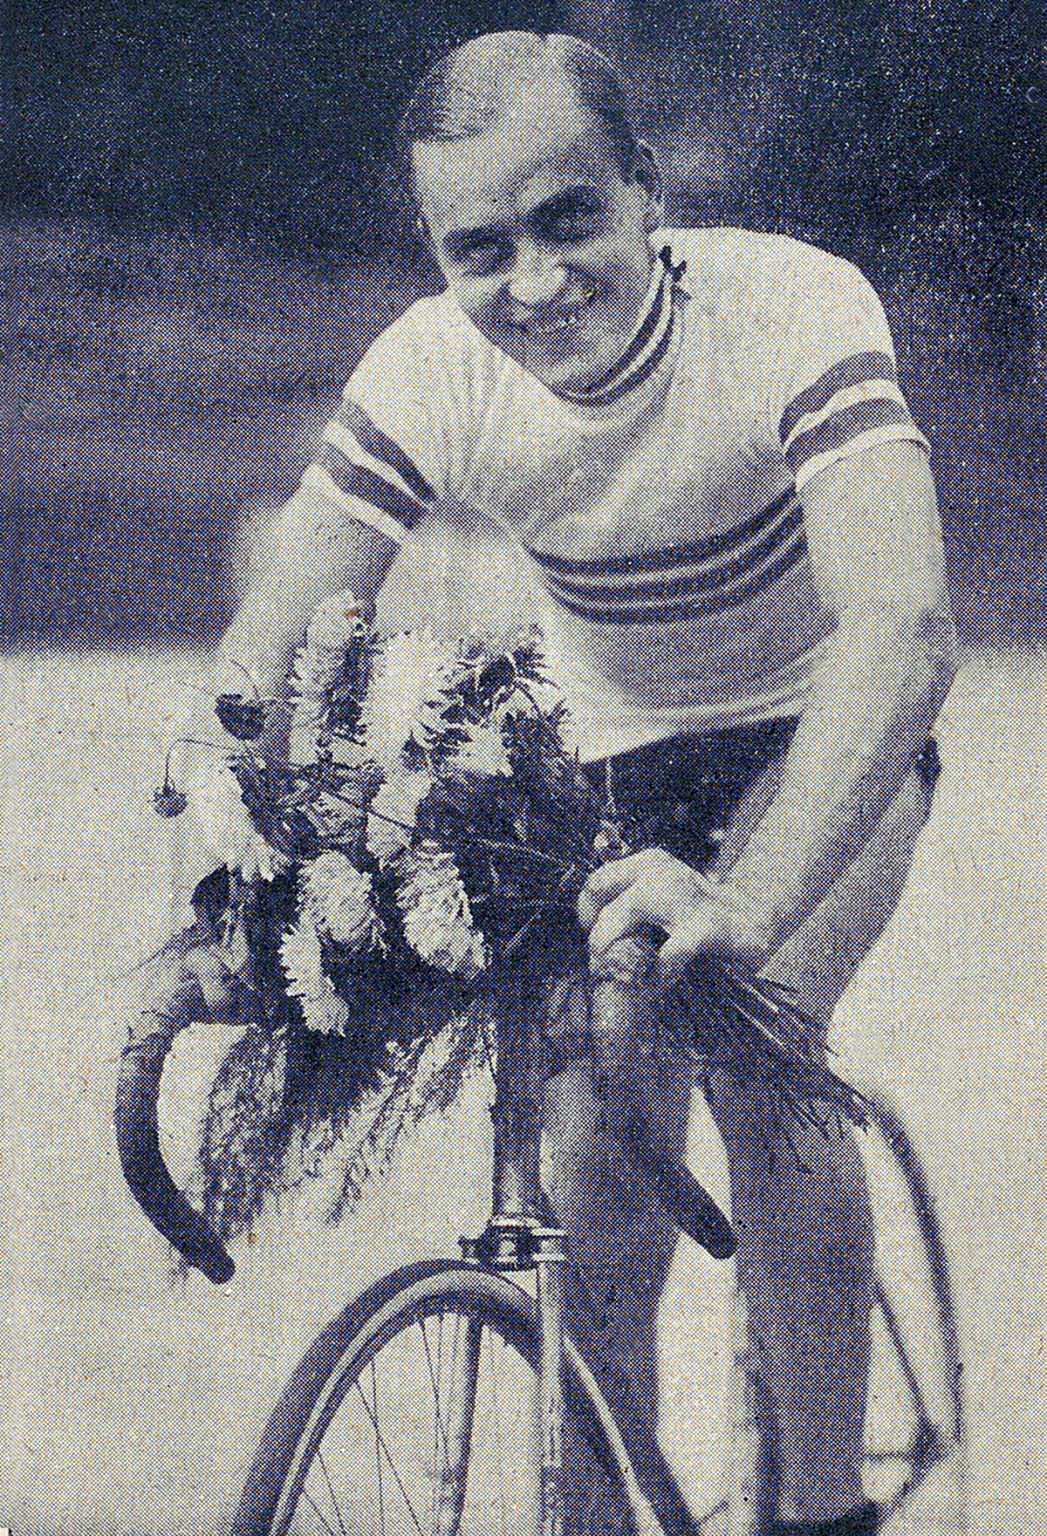 Józef Lange w wieku 37 lat – ilustracja w Programie sportowo-turystycznym Warszawskiego Towarzystwa Cyklistów, Warszawa 1934. Źródło: Biblioteka Narodowa